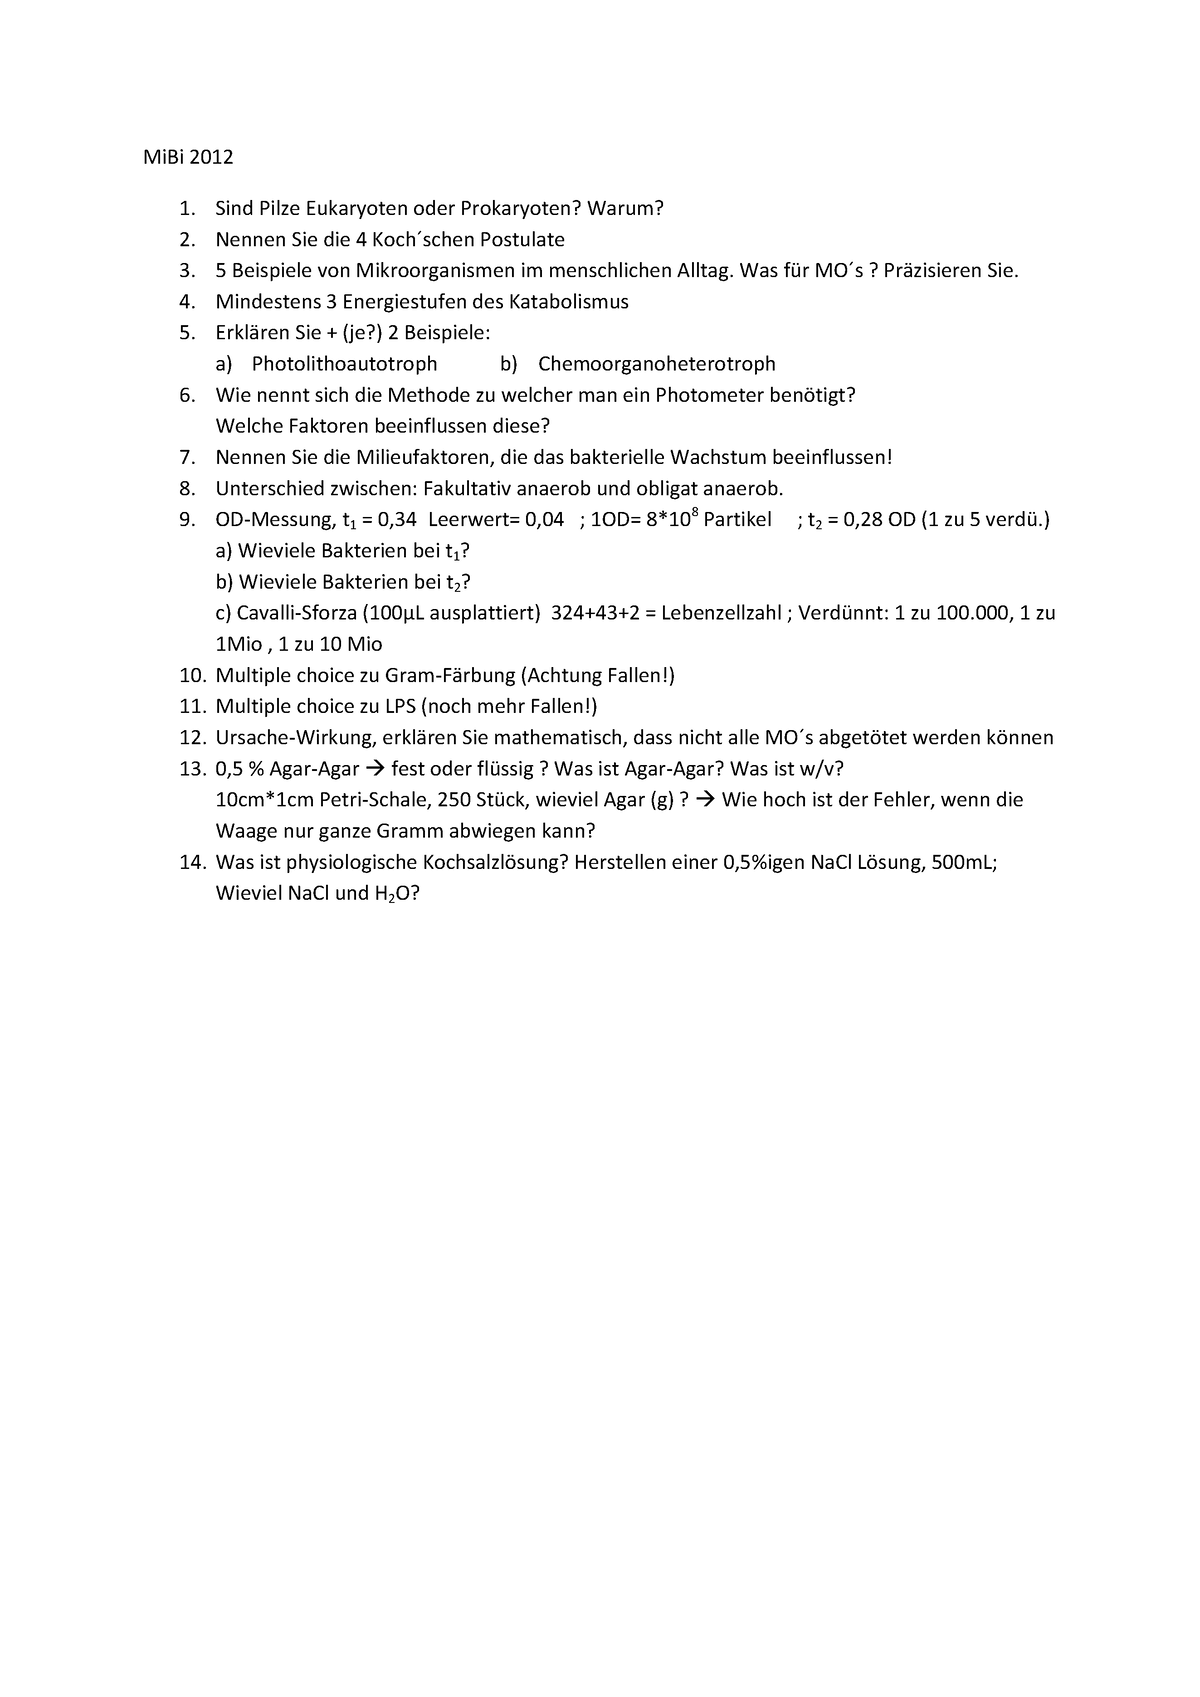 Mi Bi Klausur 2012 .pdf[326] - MiBi 2012 Sind Pilze Eukaryoten oder ...